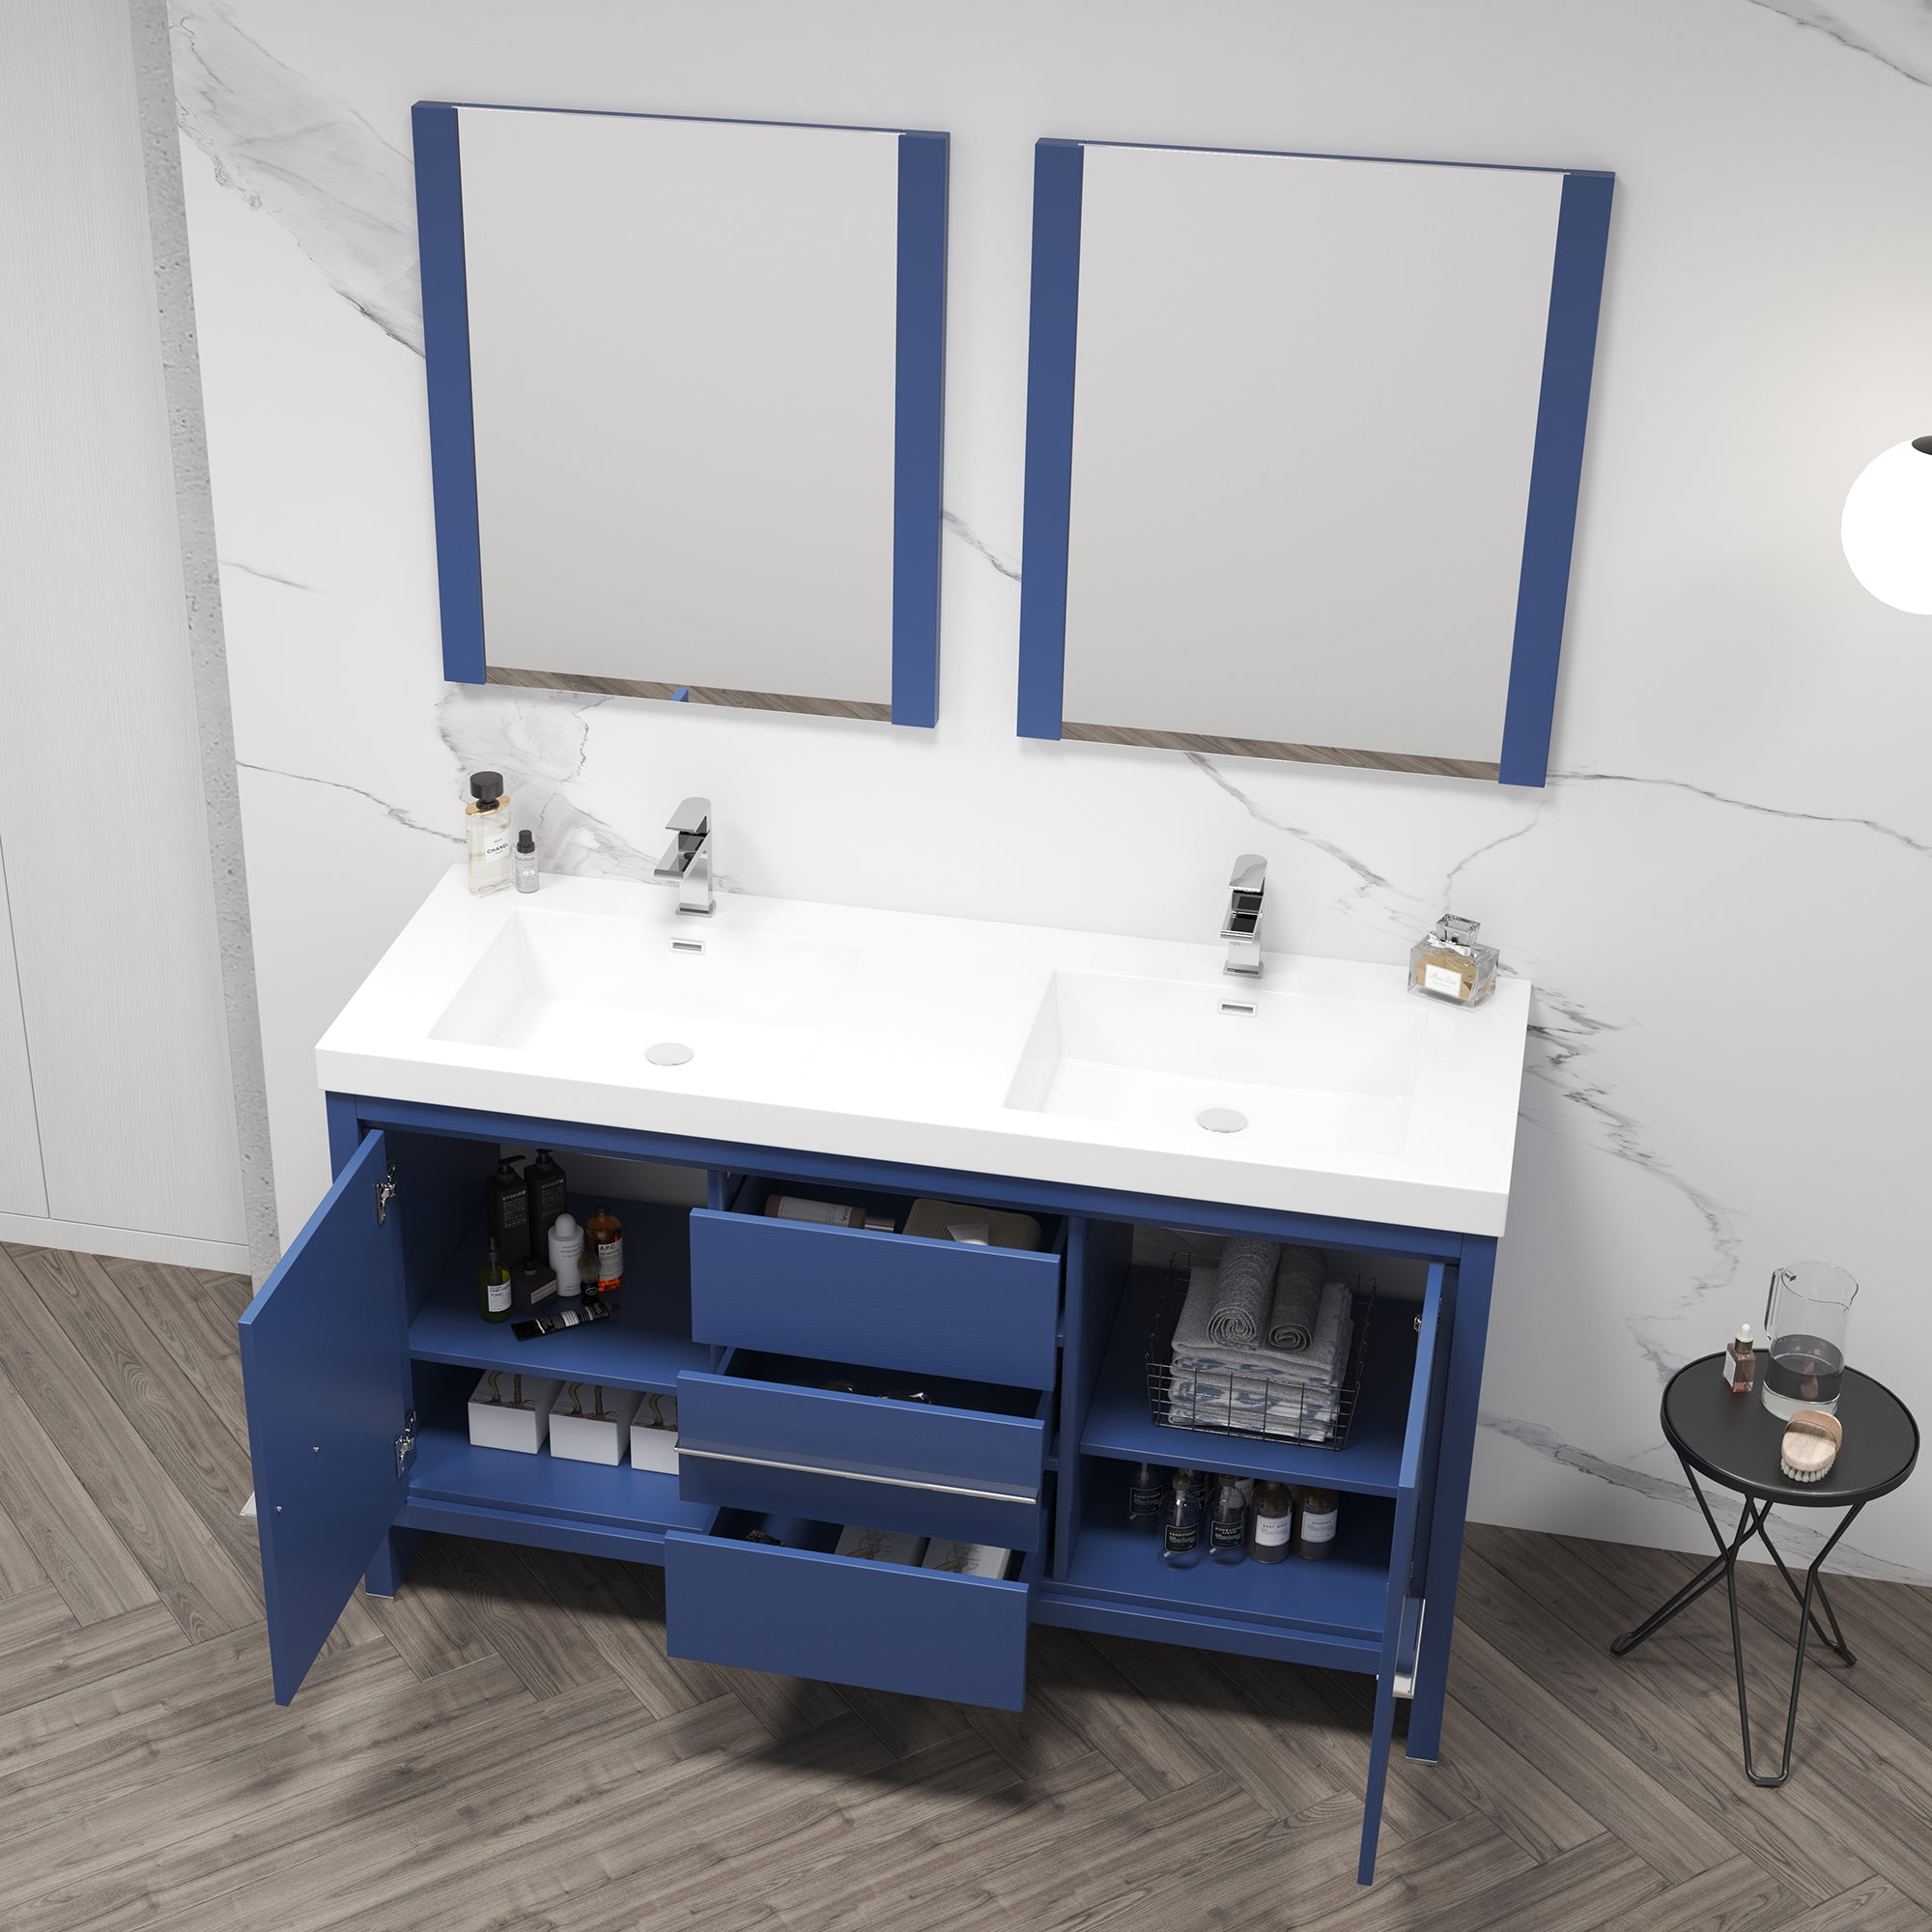 Milan 60" Bathroom Vanity  #size_60"  #color_navy blue